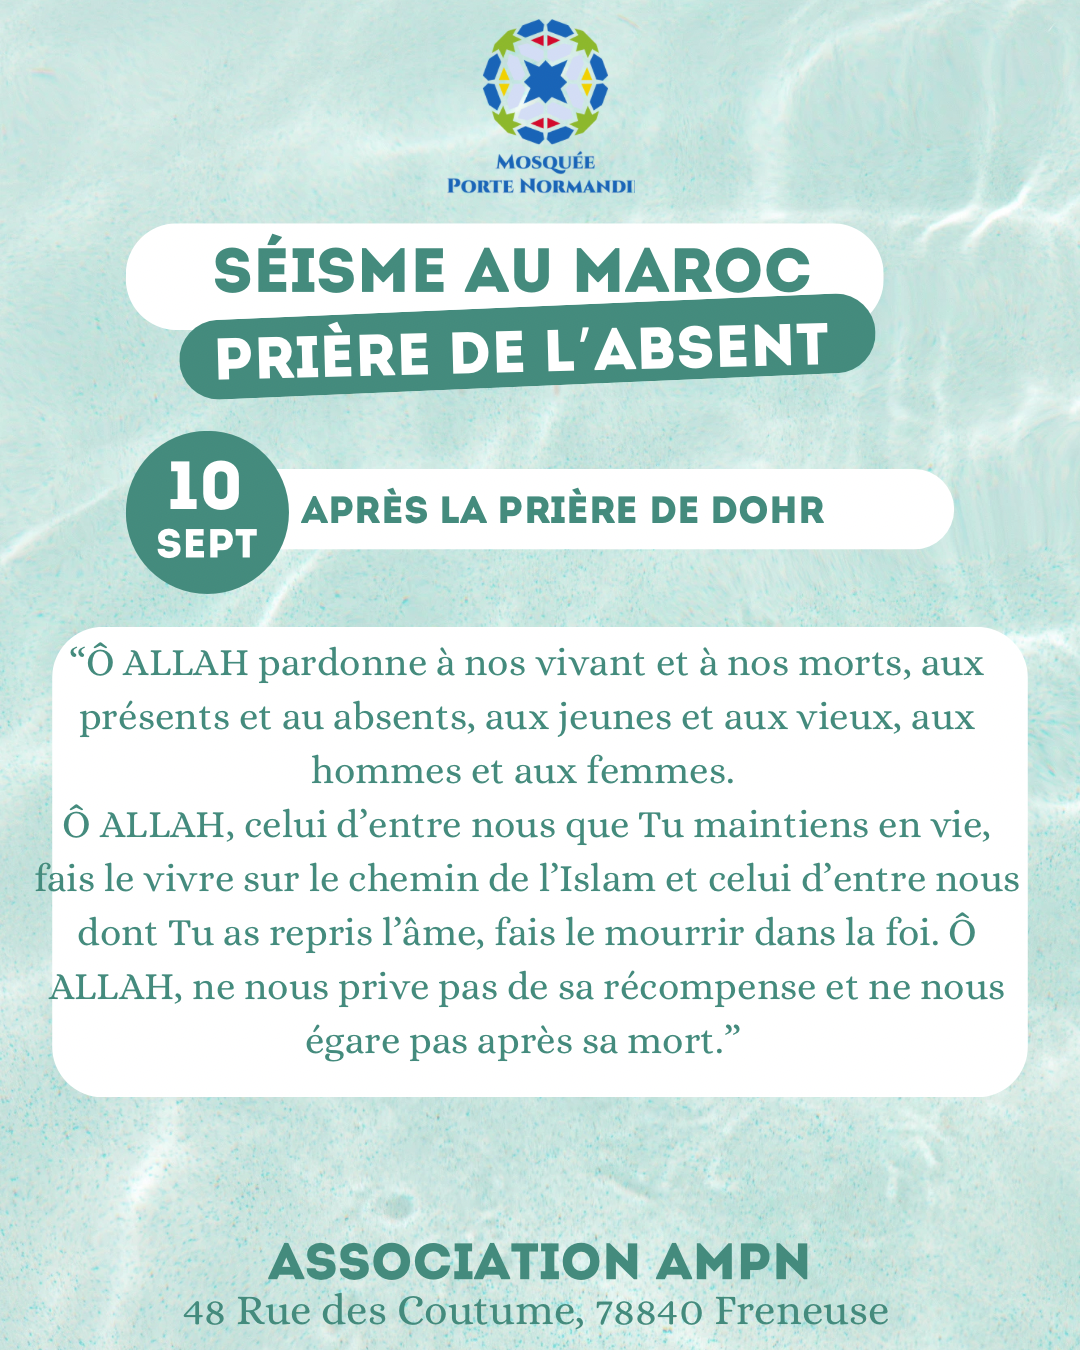 Featured image for “Prière de l’absent”